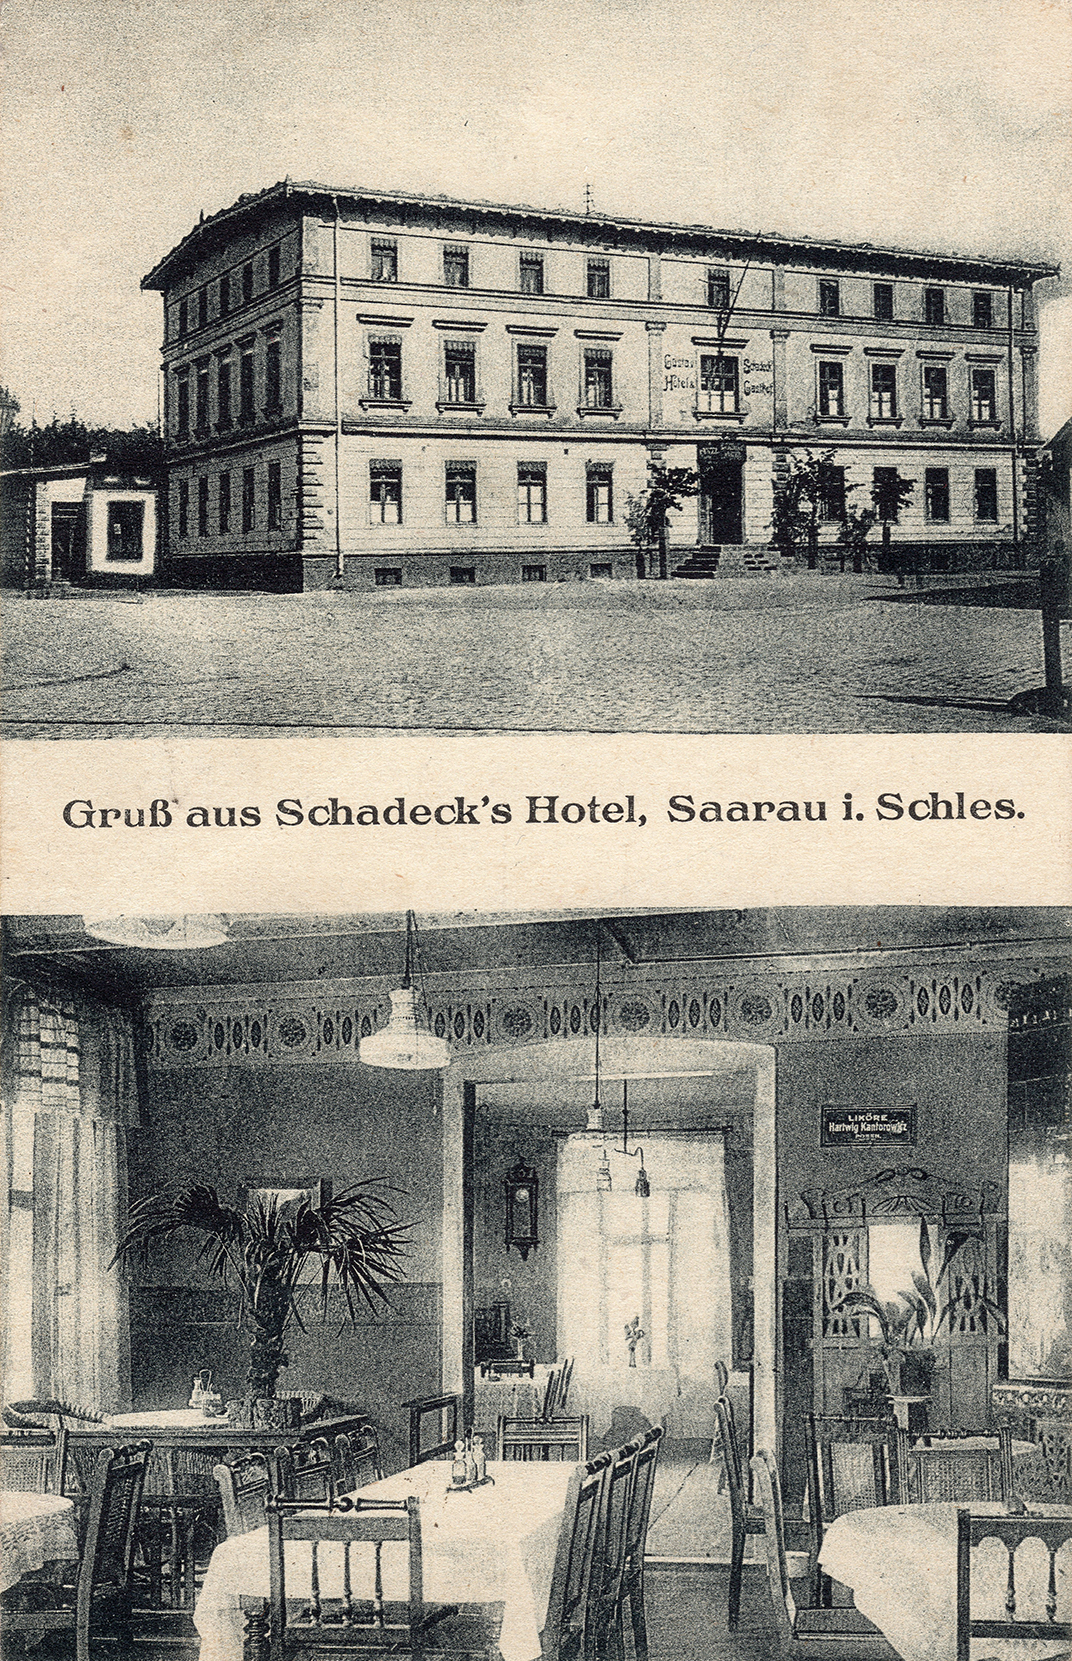 Gruss aus Schadeck’s Hotel Saarau 1919 (1)